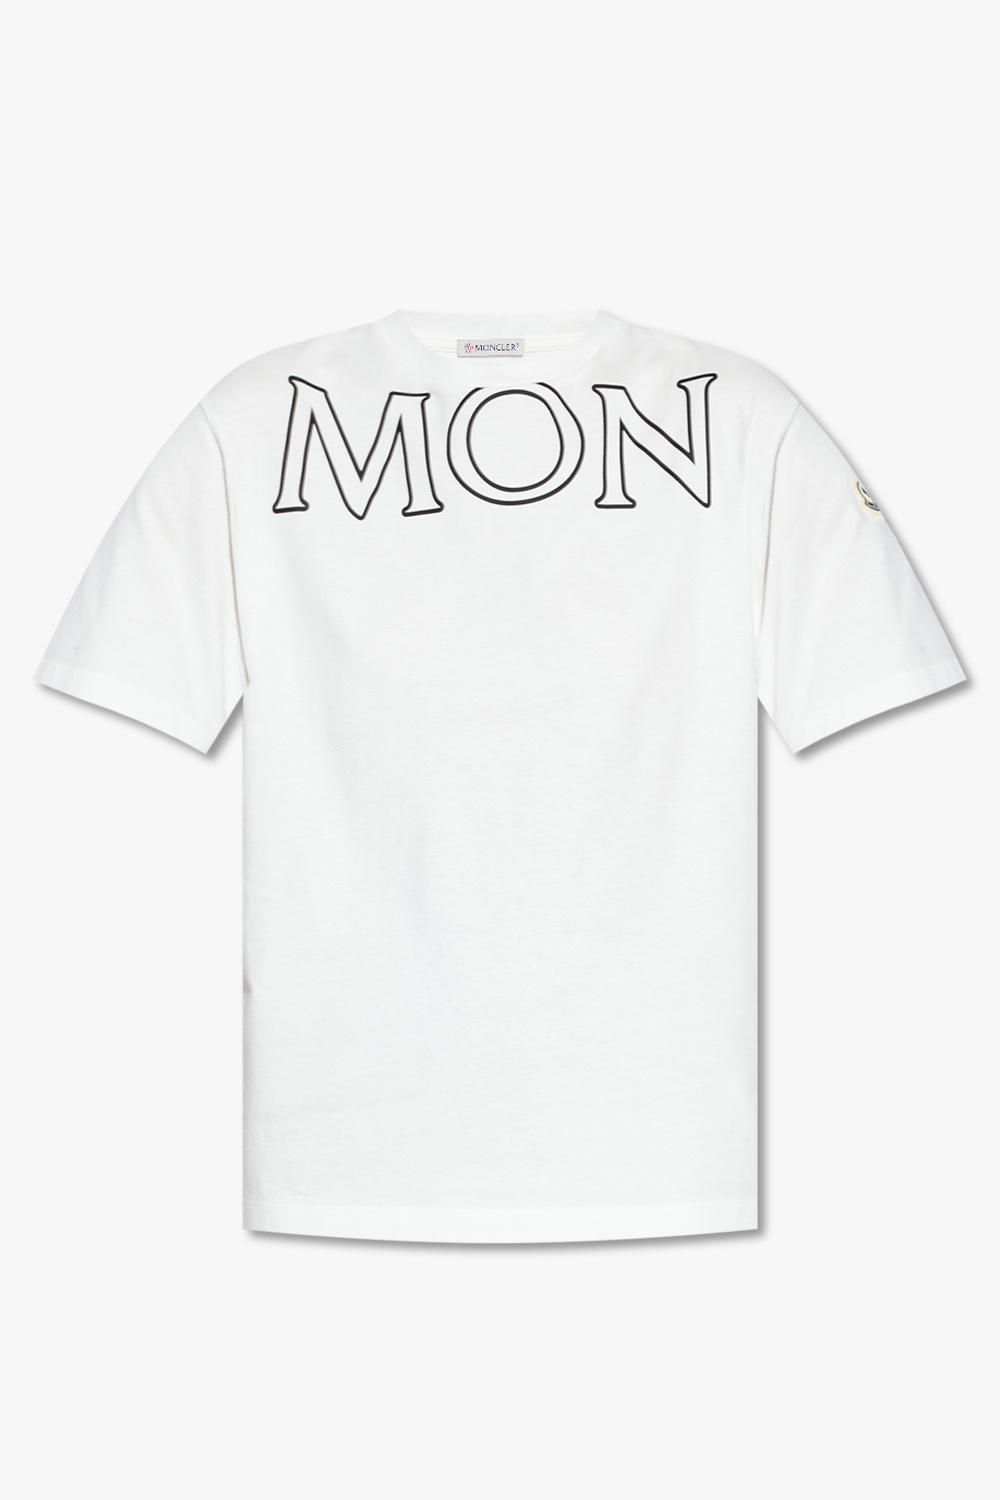 Moncler new era team logo la lakers t shirt black